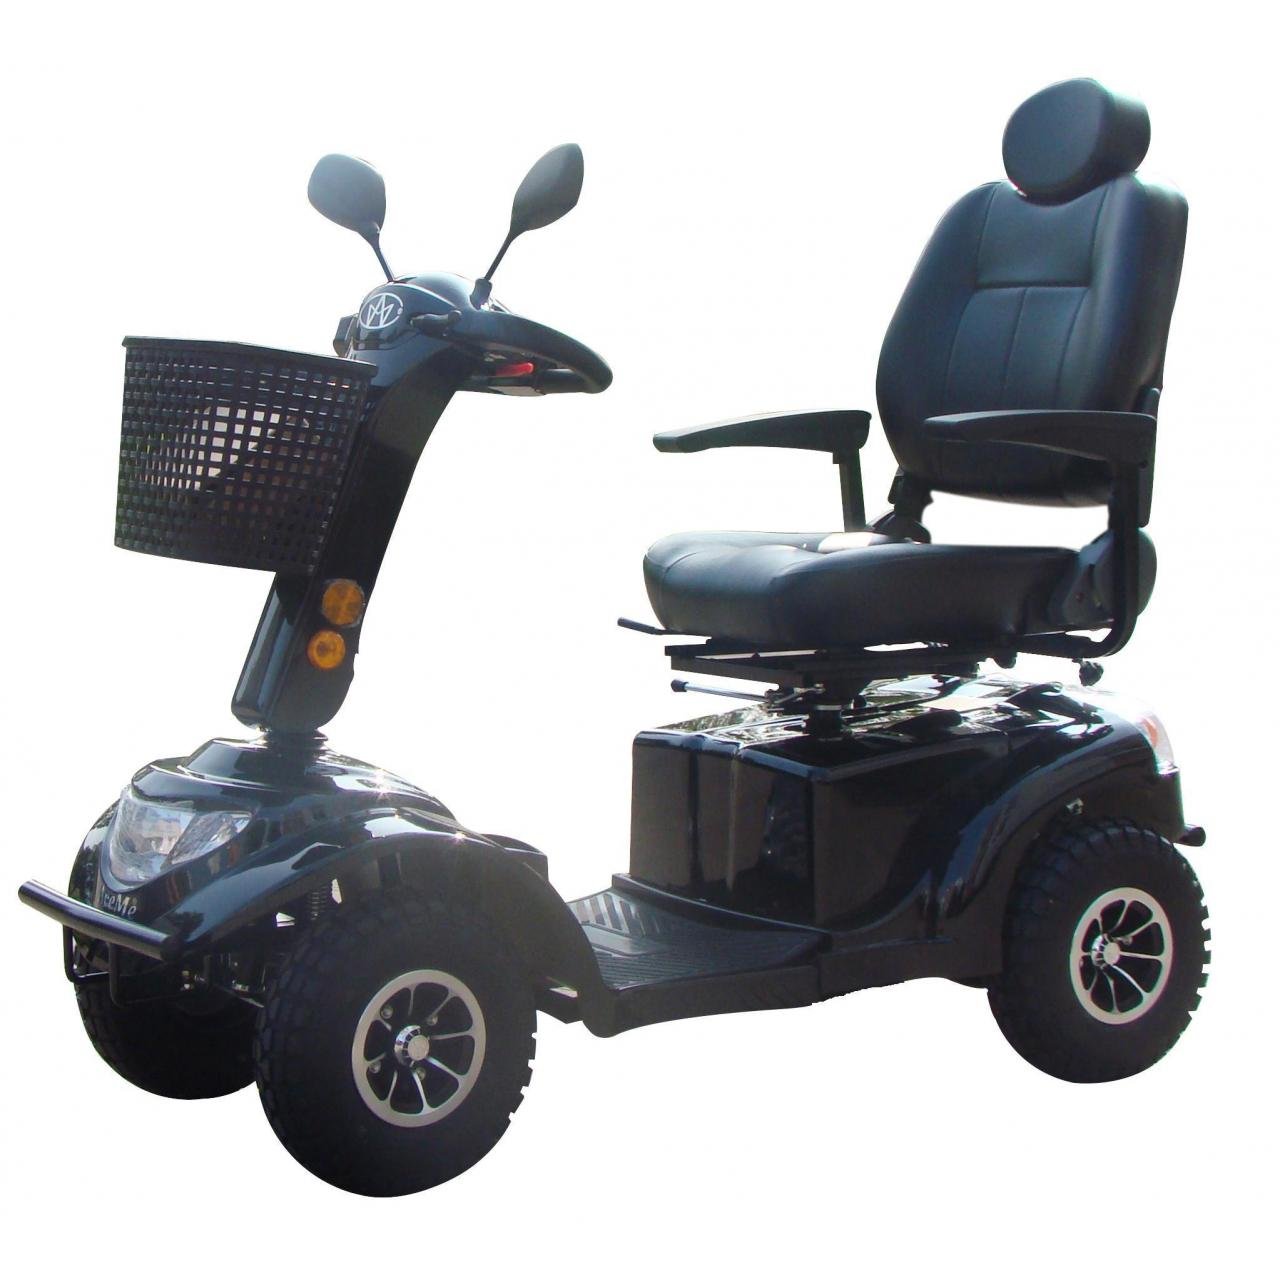 Скутер для инвалидов и пожилых. Электроскутер для инвалидов модель fr510gdx leon4. Электроскутер МТ-40 для пожилых людей и инвалидов. Скутер электрический Midilli s 1200 четырехколесный. Кресло коляска скутер МТ 100.